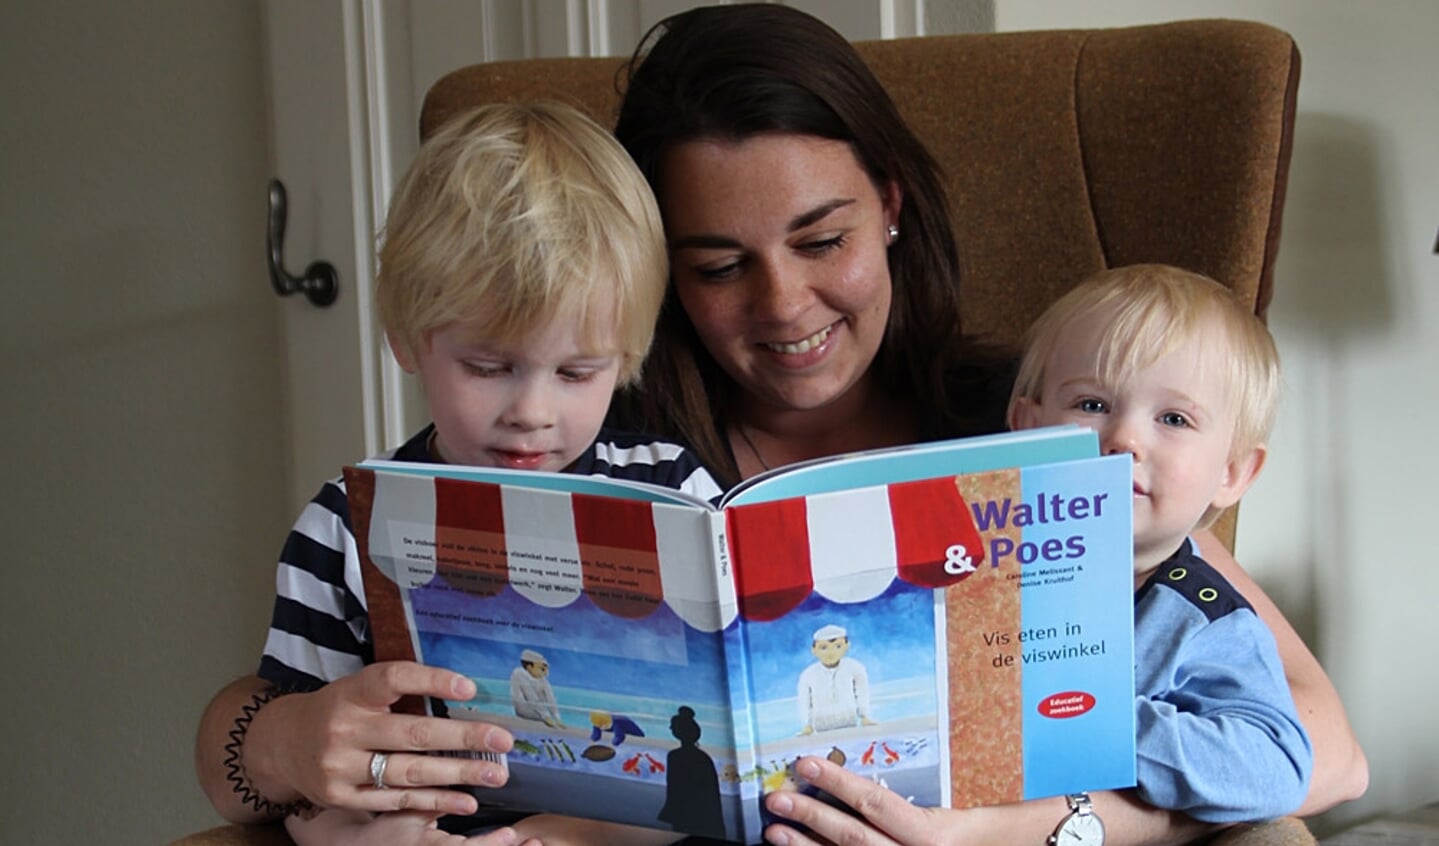  Caroline Melissant brengt vierde educatieve kinderboek uit